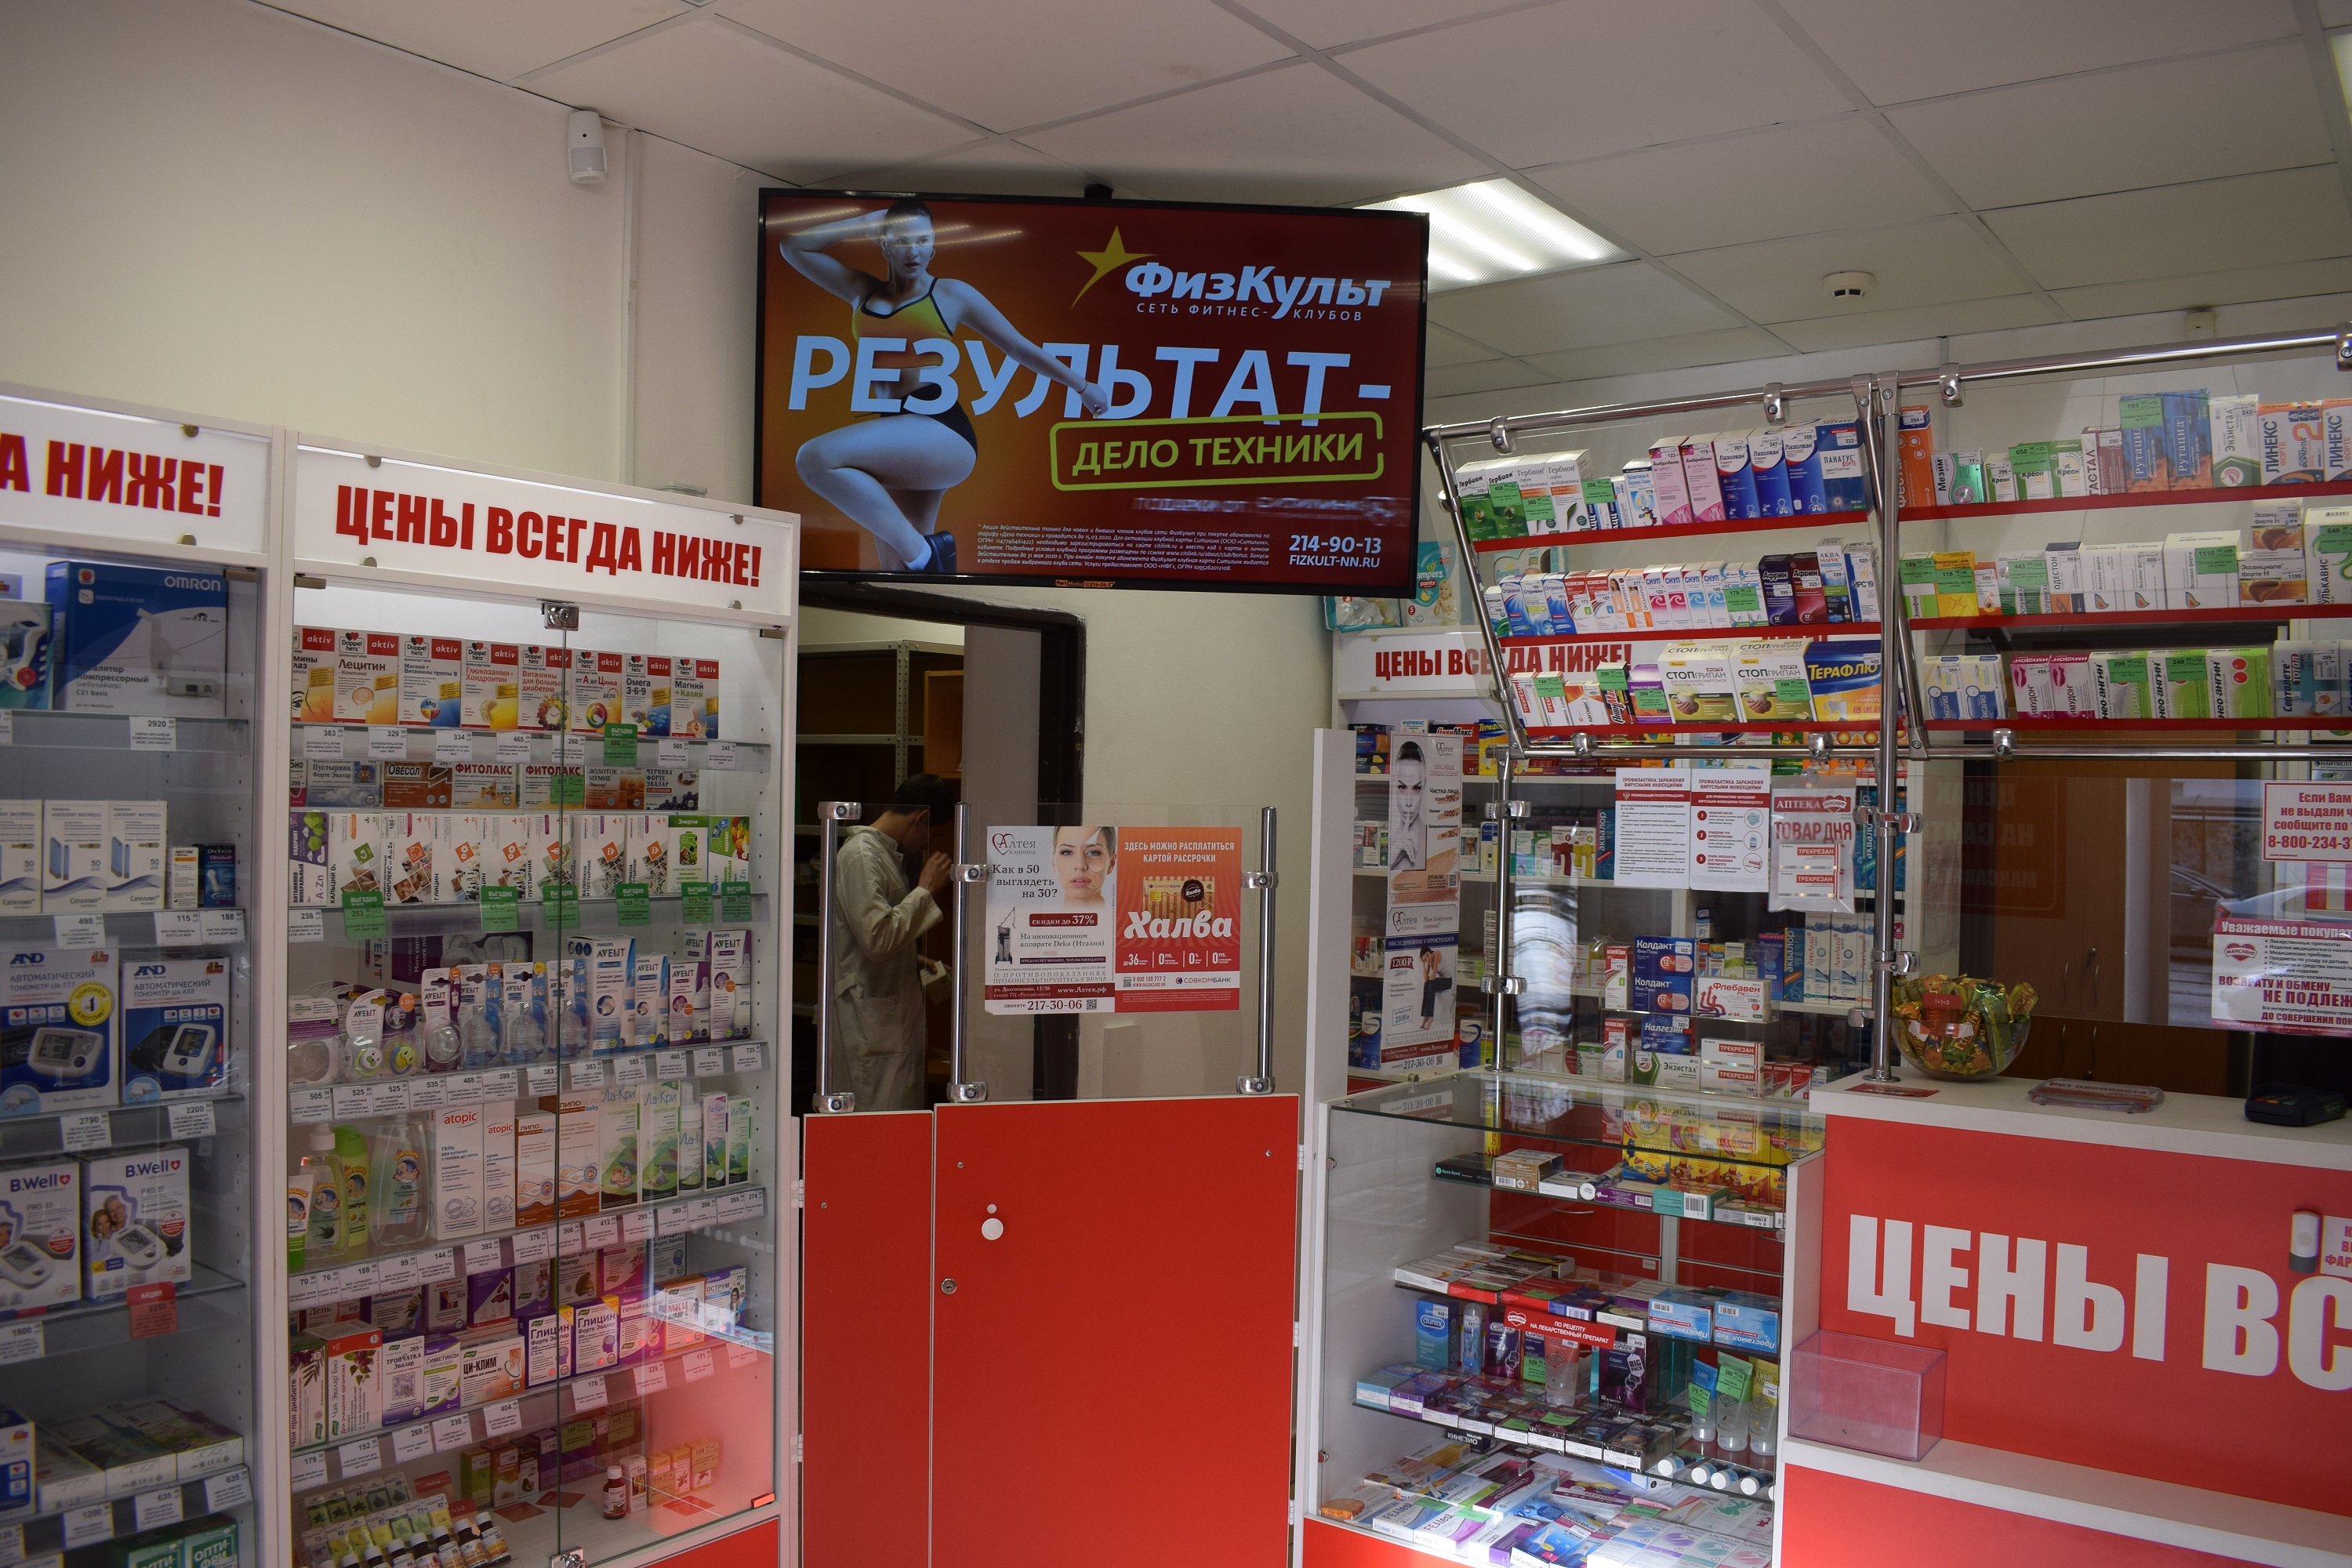 Аптека максавит каталог товаров цены нижний новгород